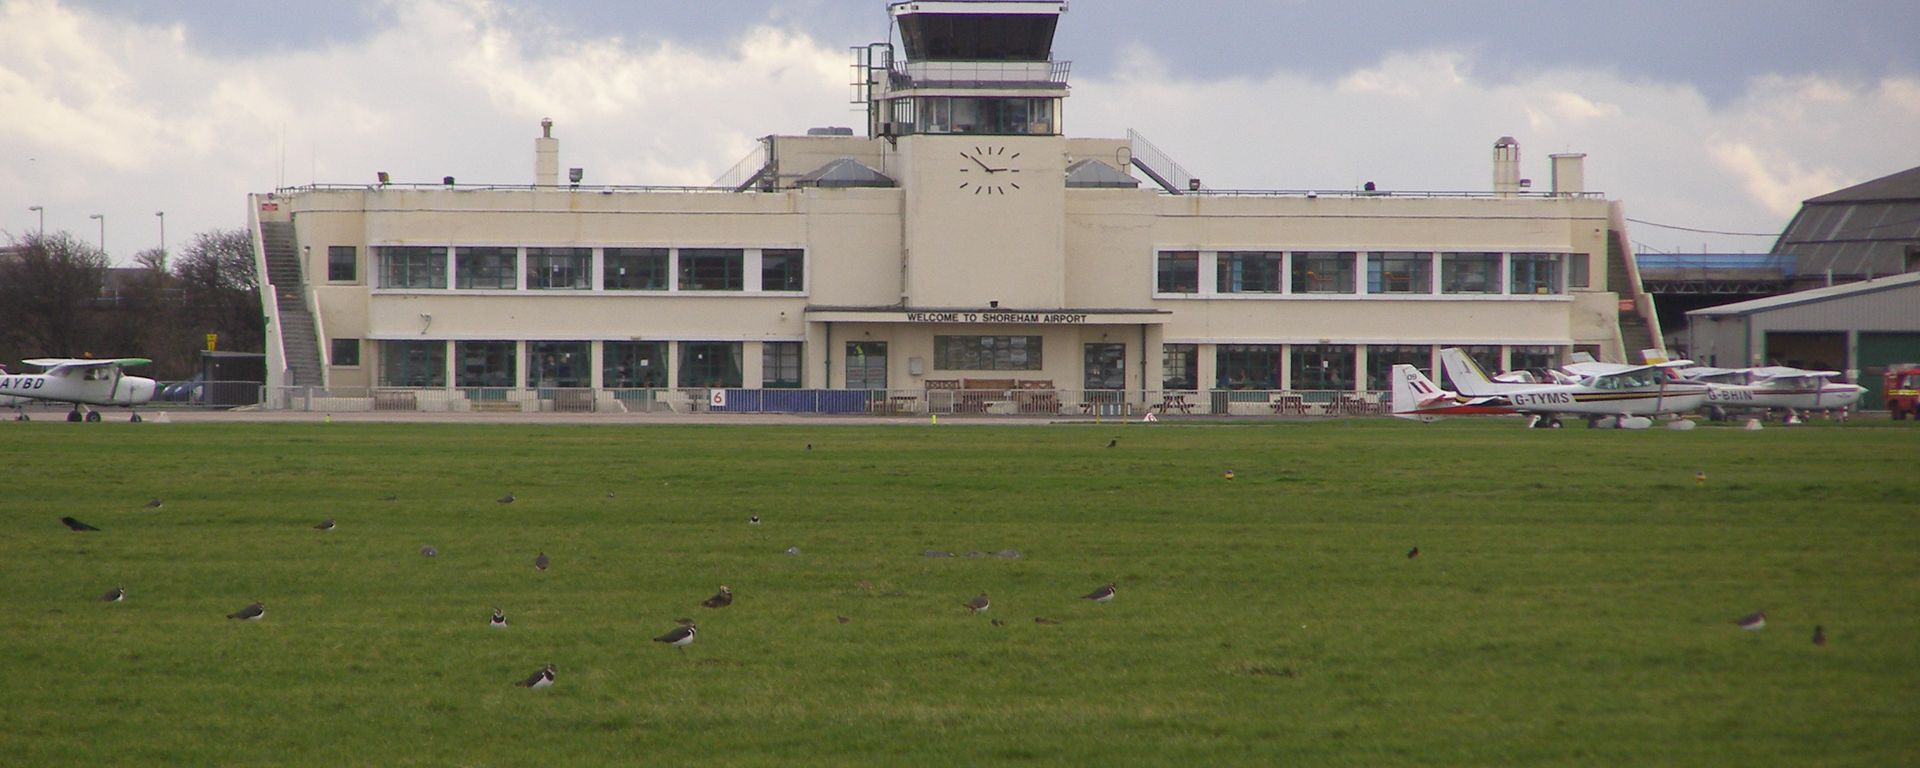 Shoreham Airport Visitor Centre